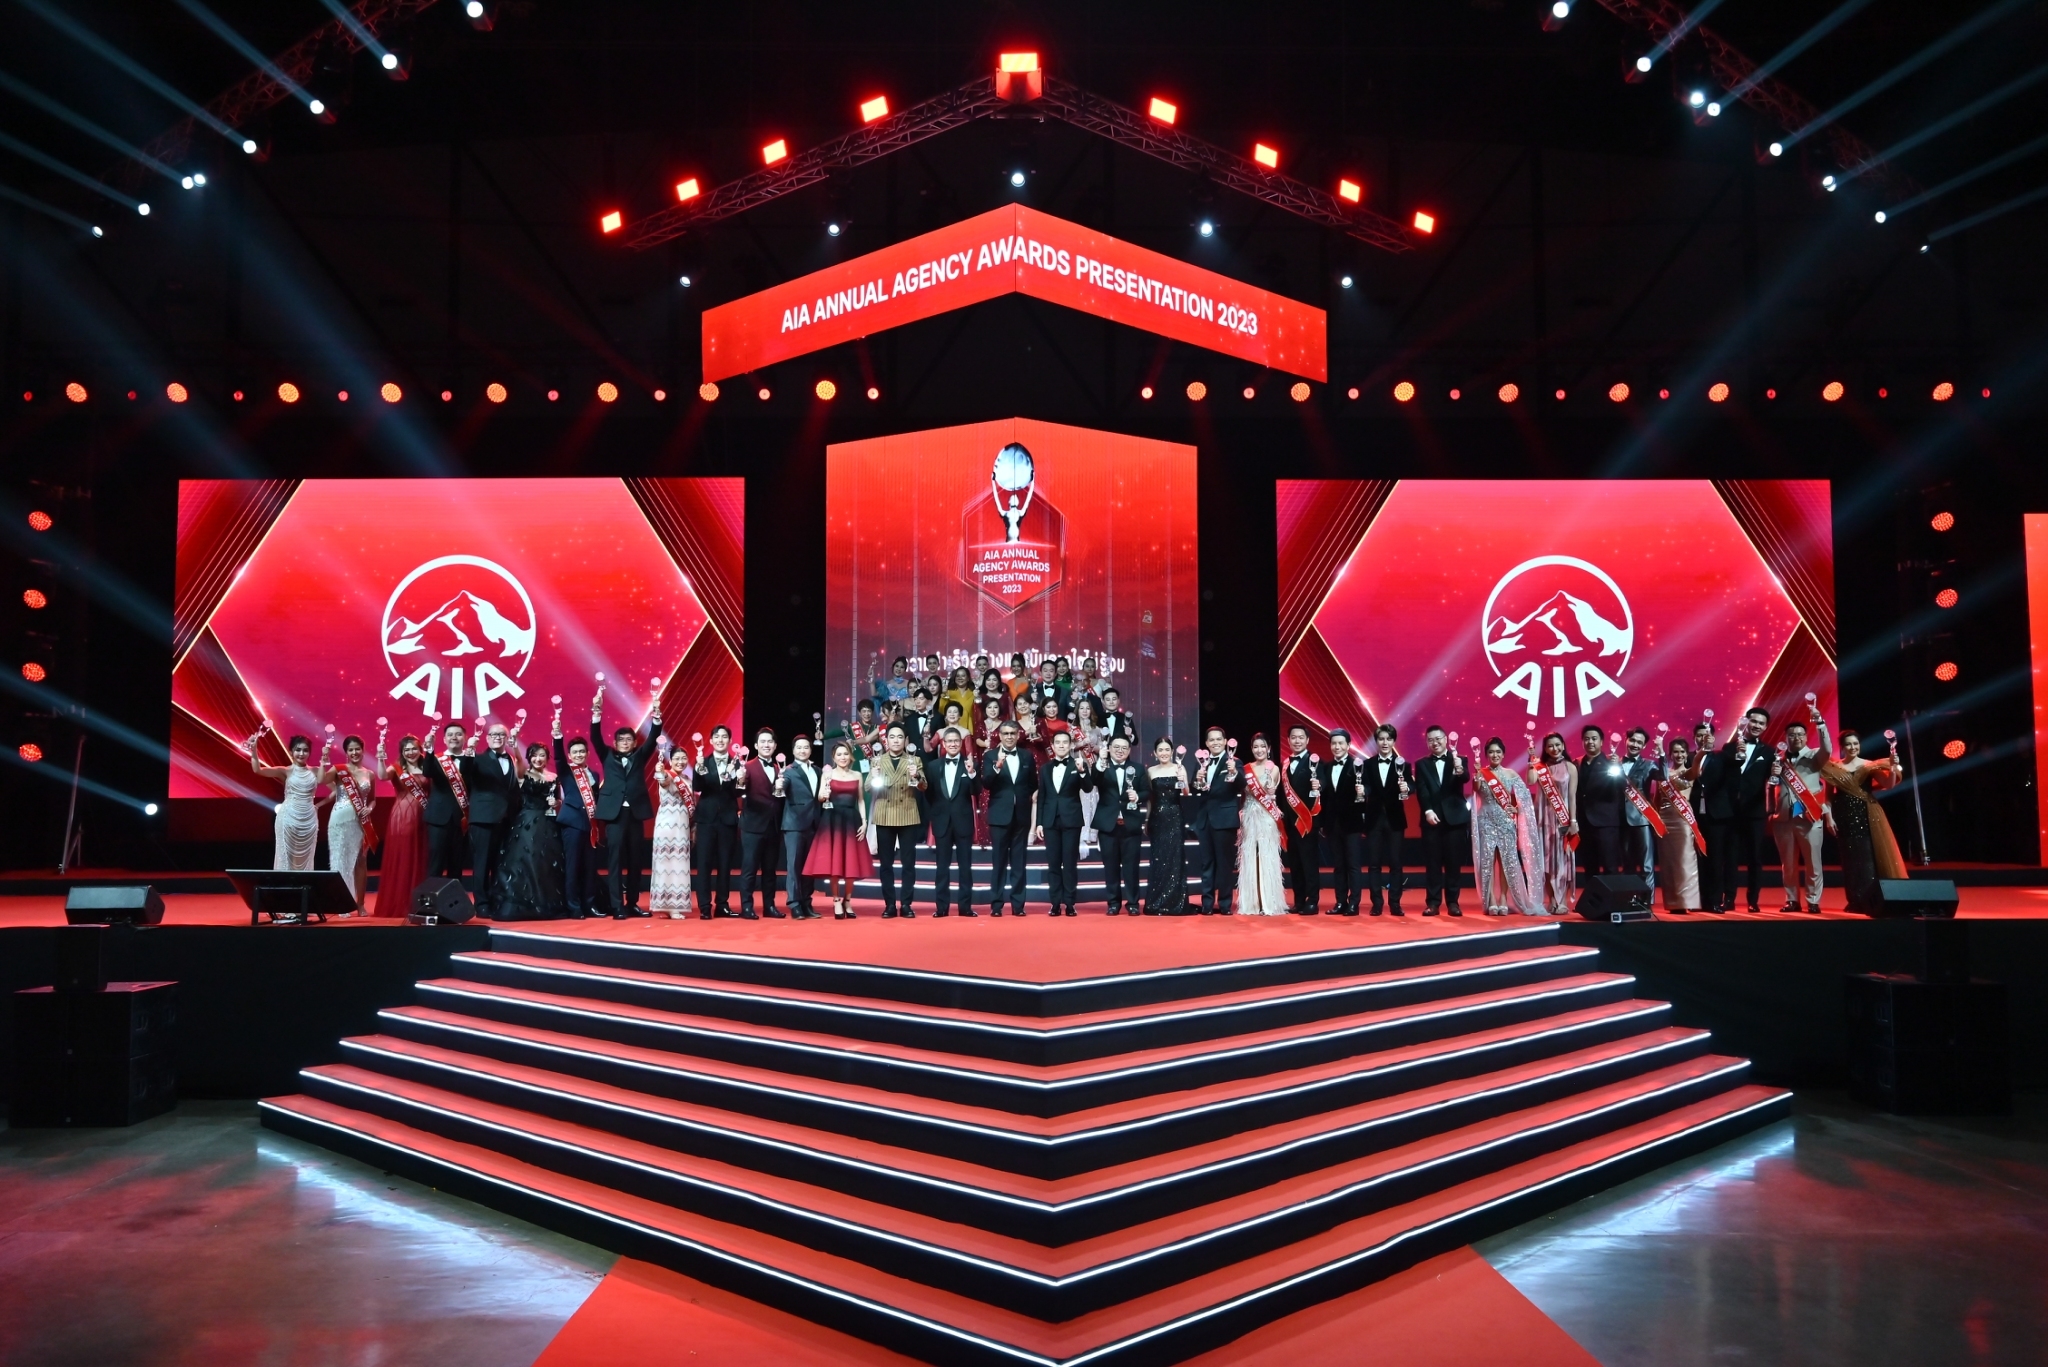 เอไอเอ ประเทศไทย มอบรางวัลเกียรติยศแก่สุดยอดตัวแทน “ที่สุดแห่งปี” ประจำปี 2566 ในงาน AIA Annual Agency Awards Presentation 2023¬¬¬¬ สำนักพิมพ์แม่บ้าน